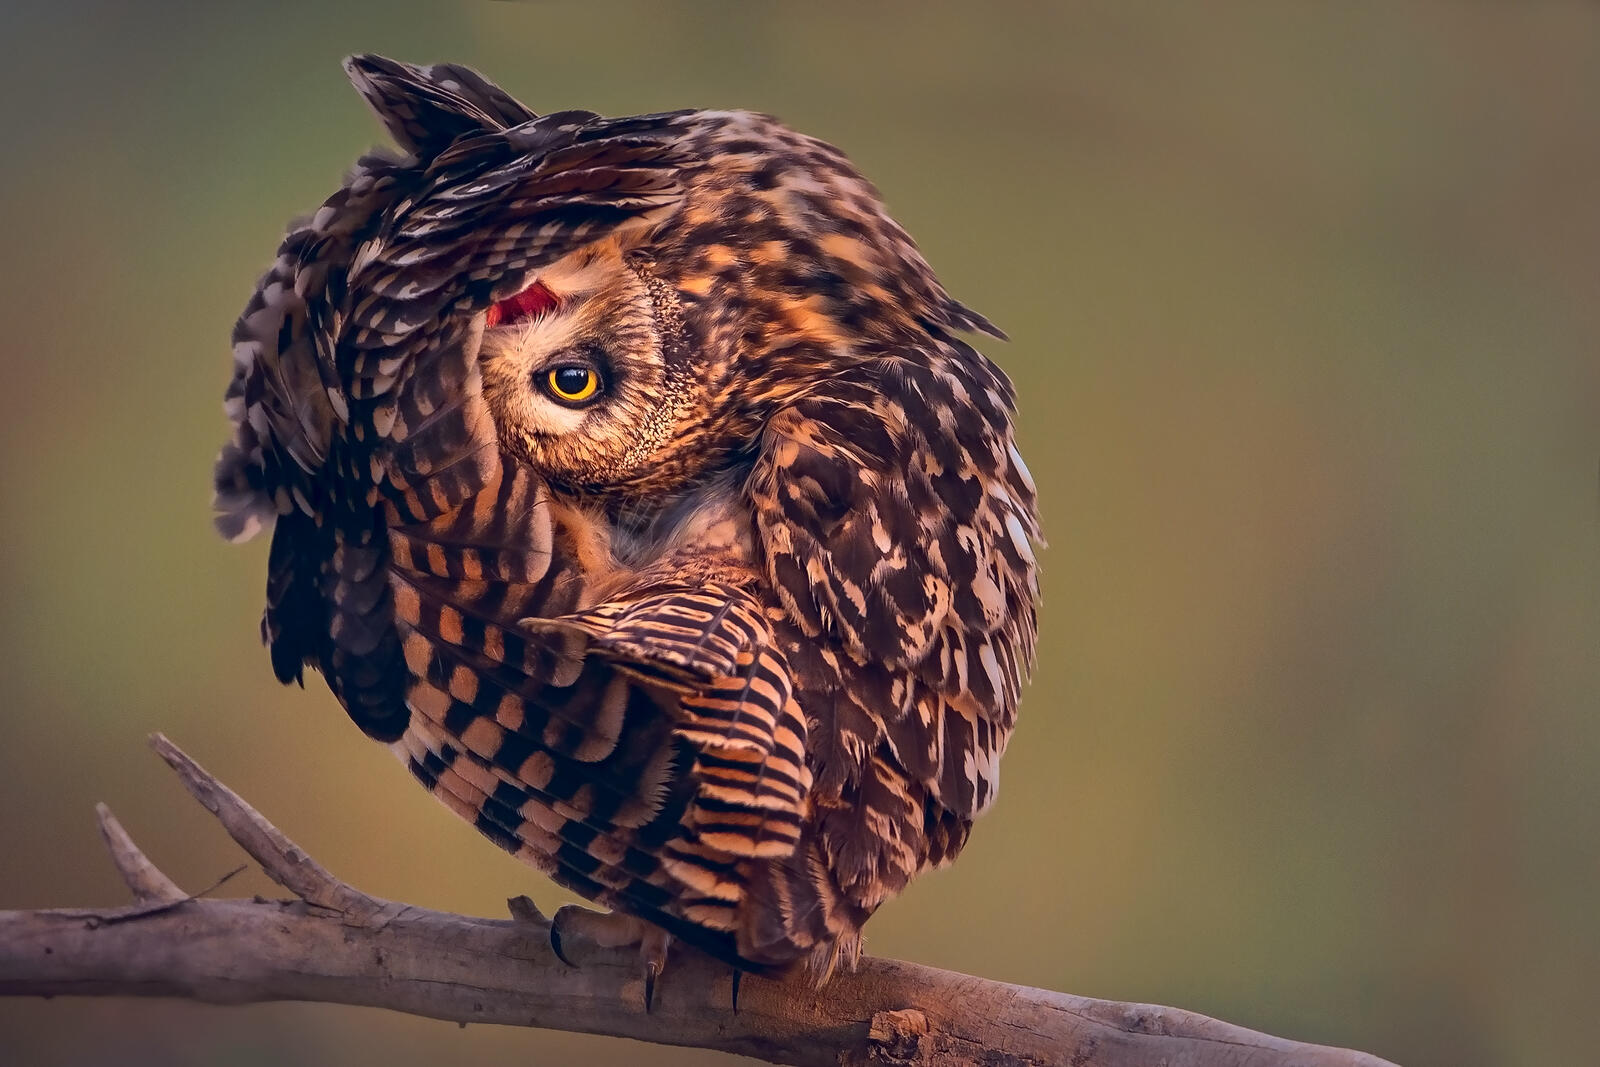 Wallpapers wildlife bird of prey owl on the desktop